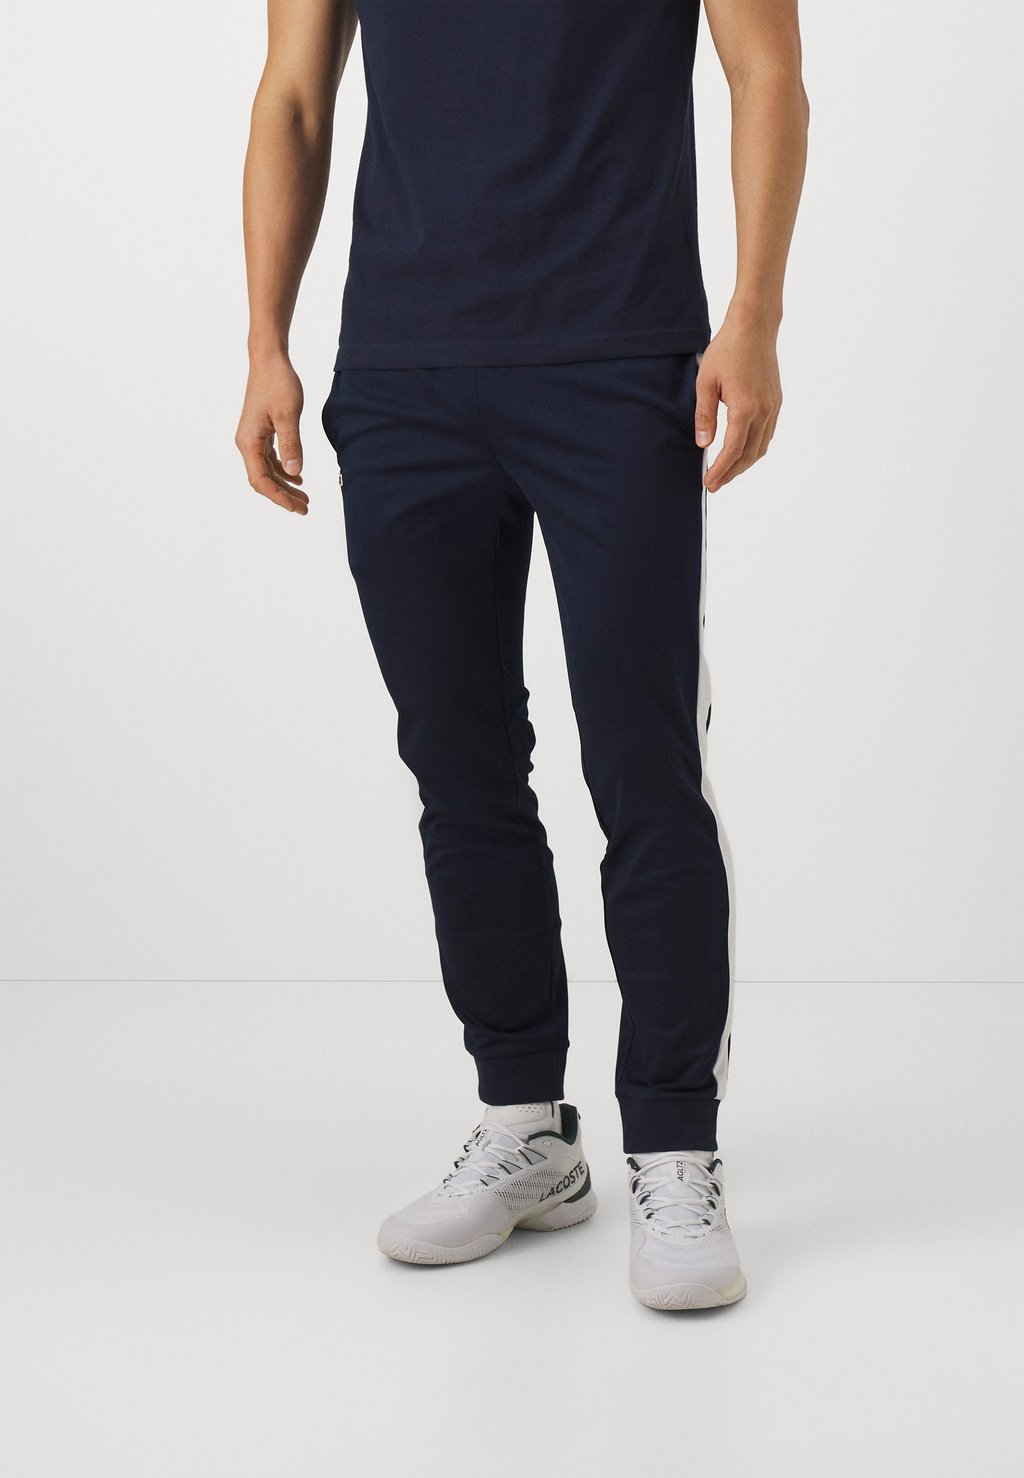 Спортивные брюки Trousers Tc Lacoste, цвет navy blue/white спортивные брюки tennis pant lacoste цвет sinople navy blue